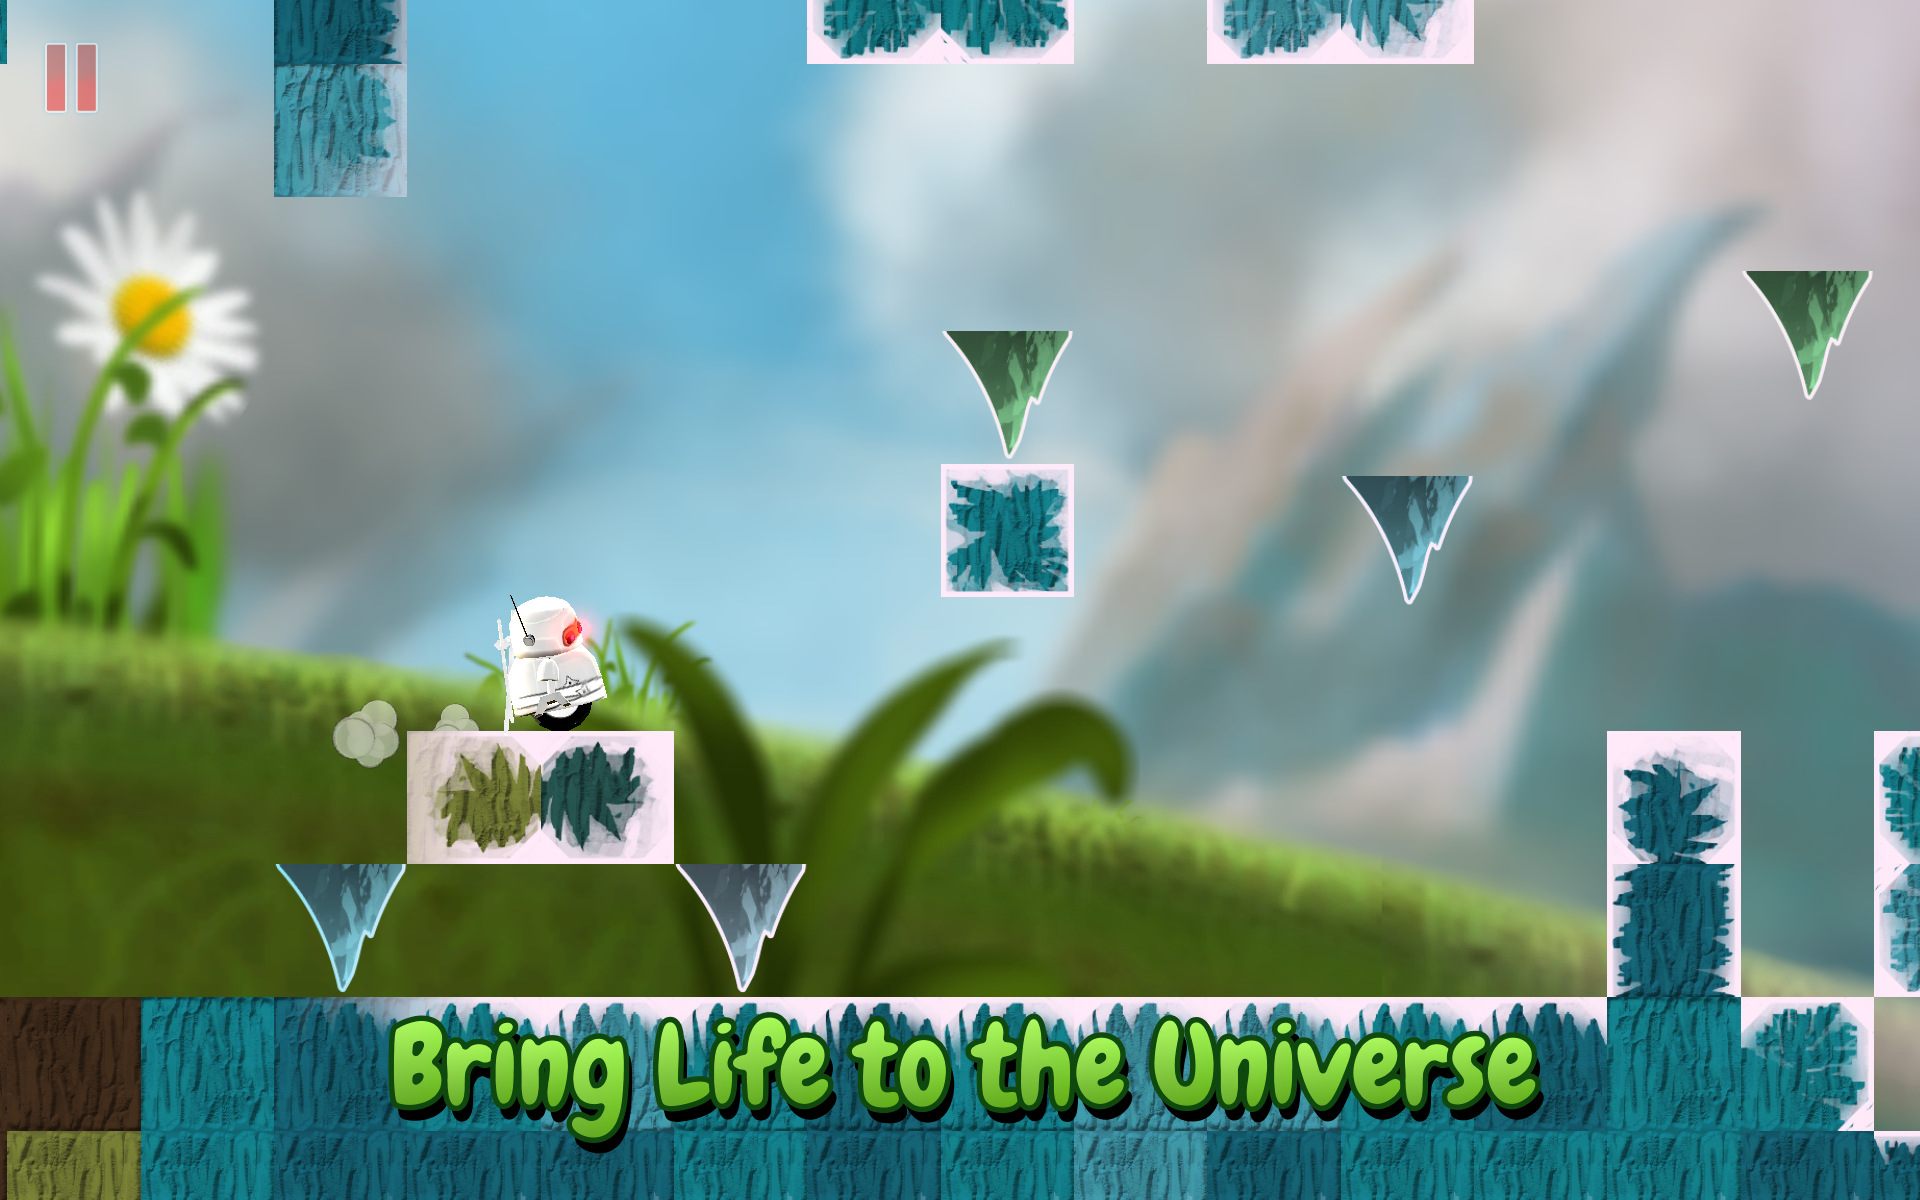 Galaxy Groove screenshot game